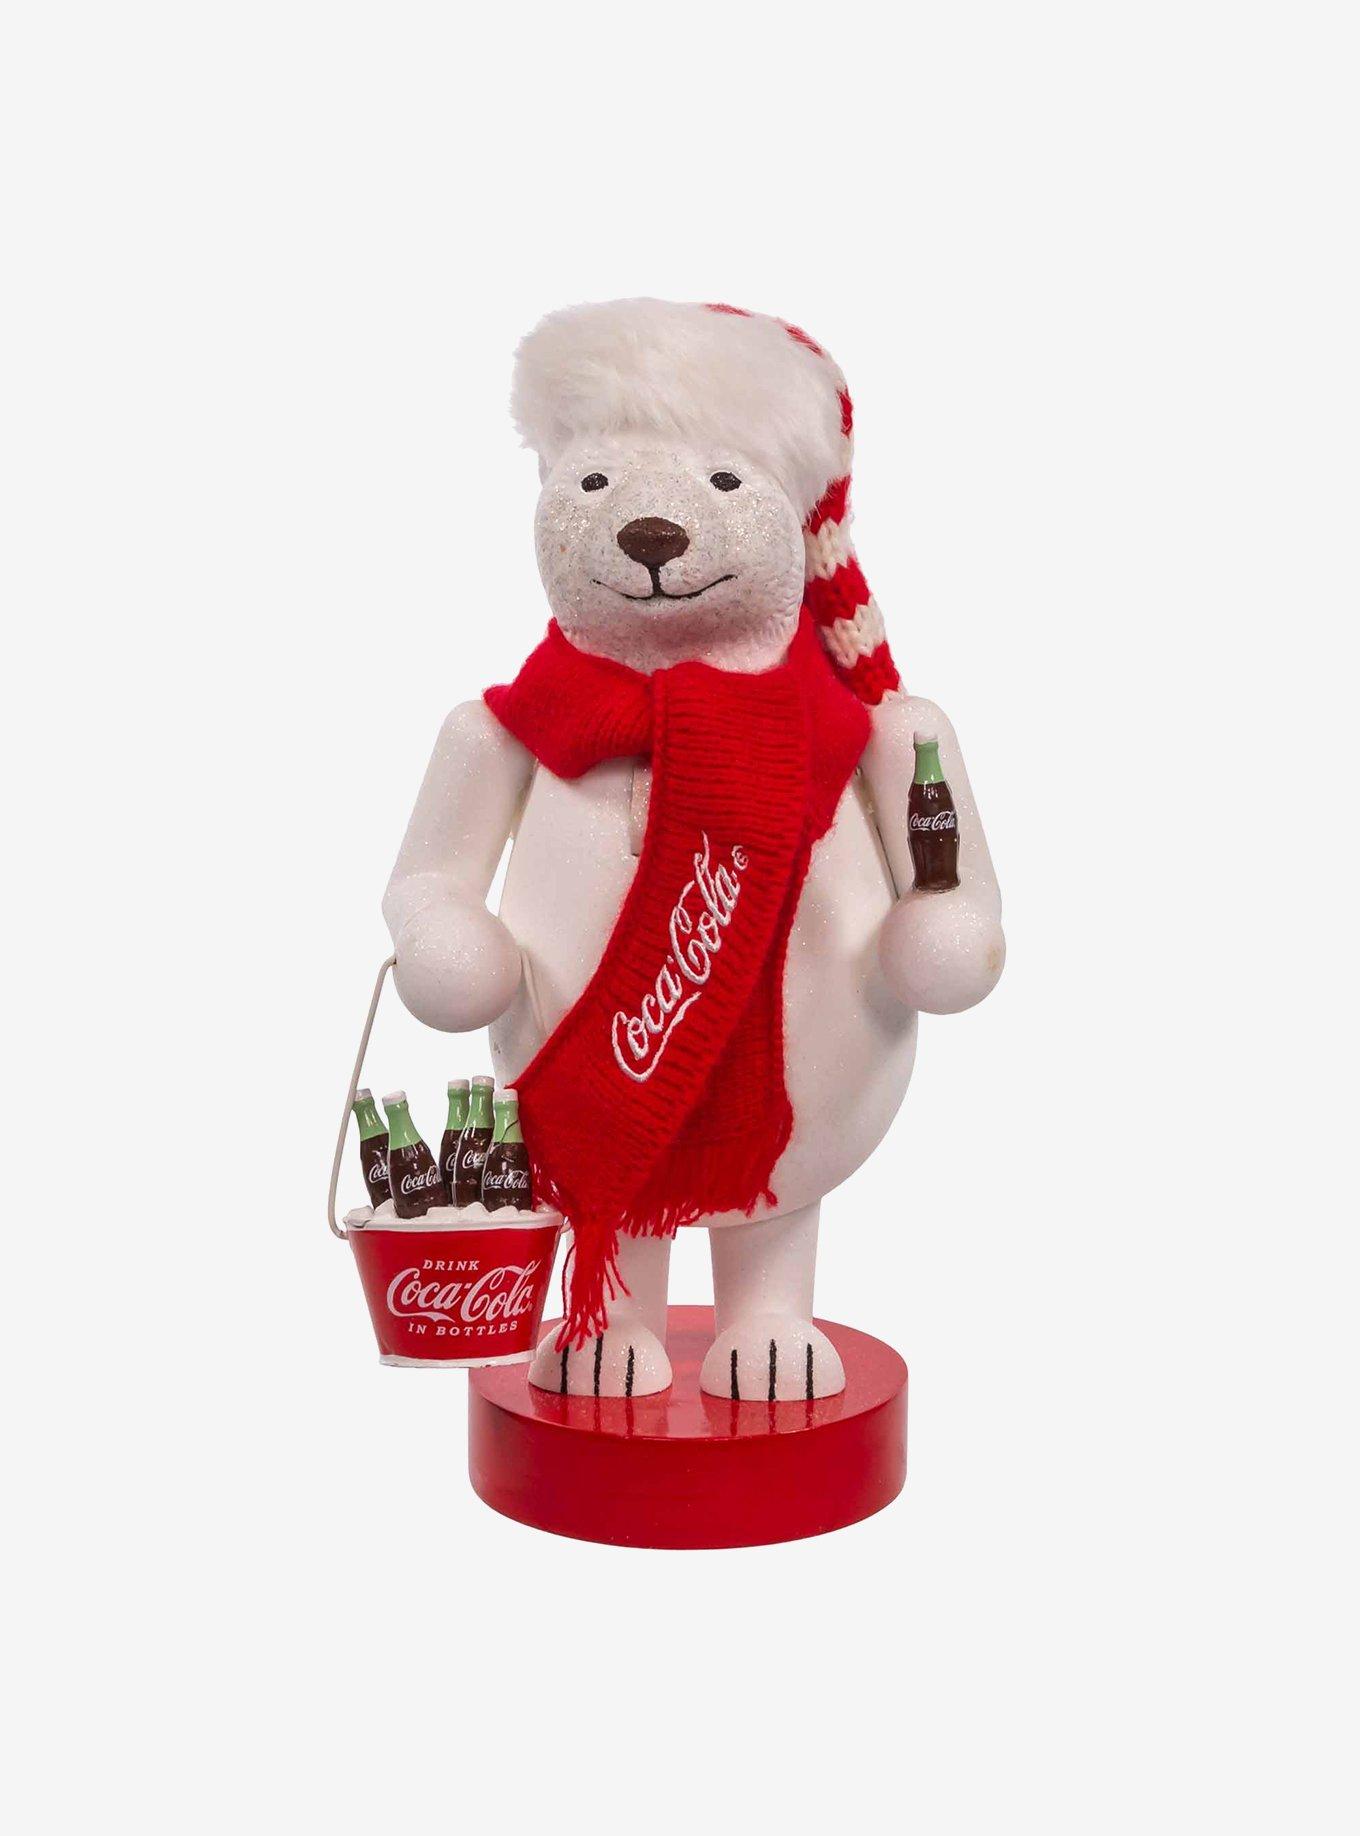 Coca-Cola Polar Bear Nutcracker